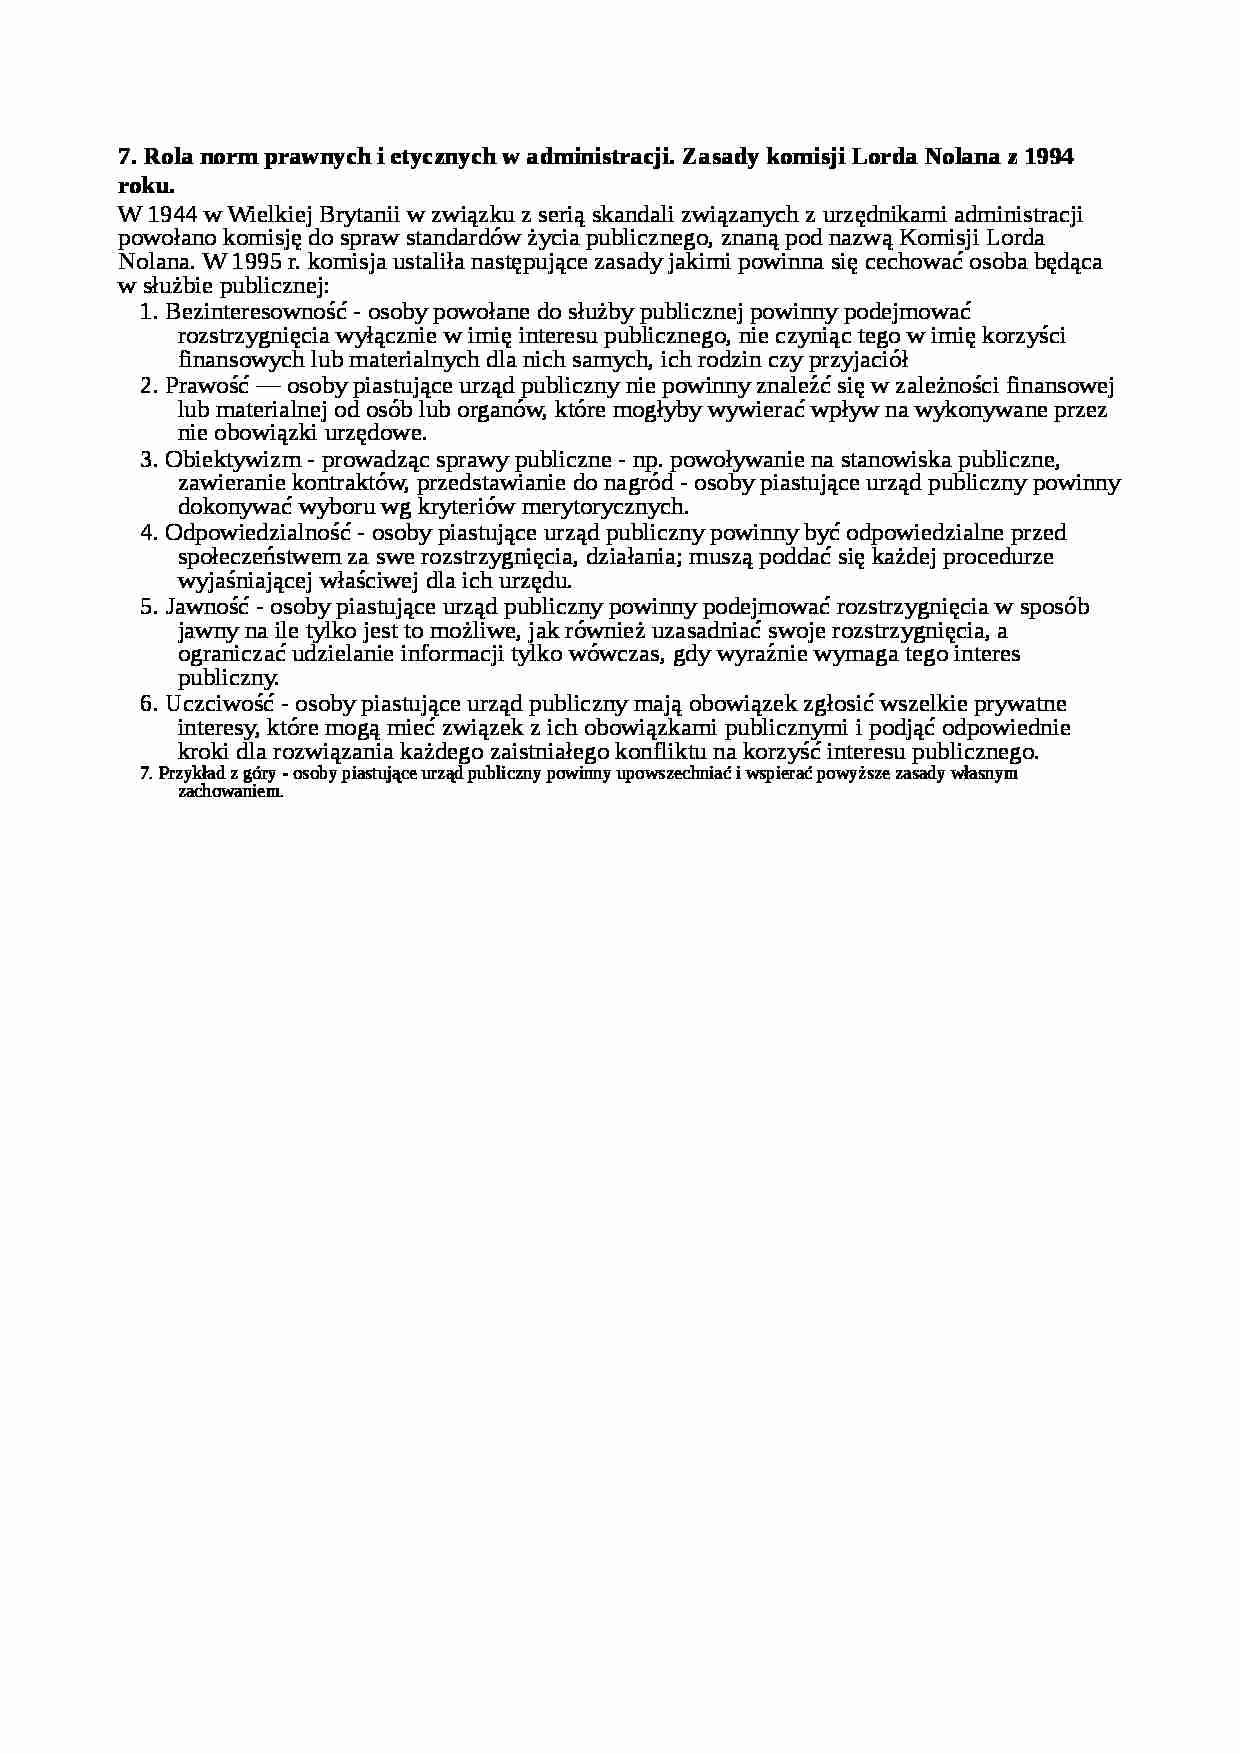 Rola norm prawnych i etycznych w administracji - wykład - strona 1